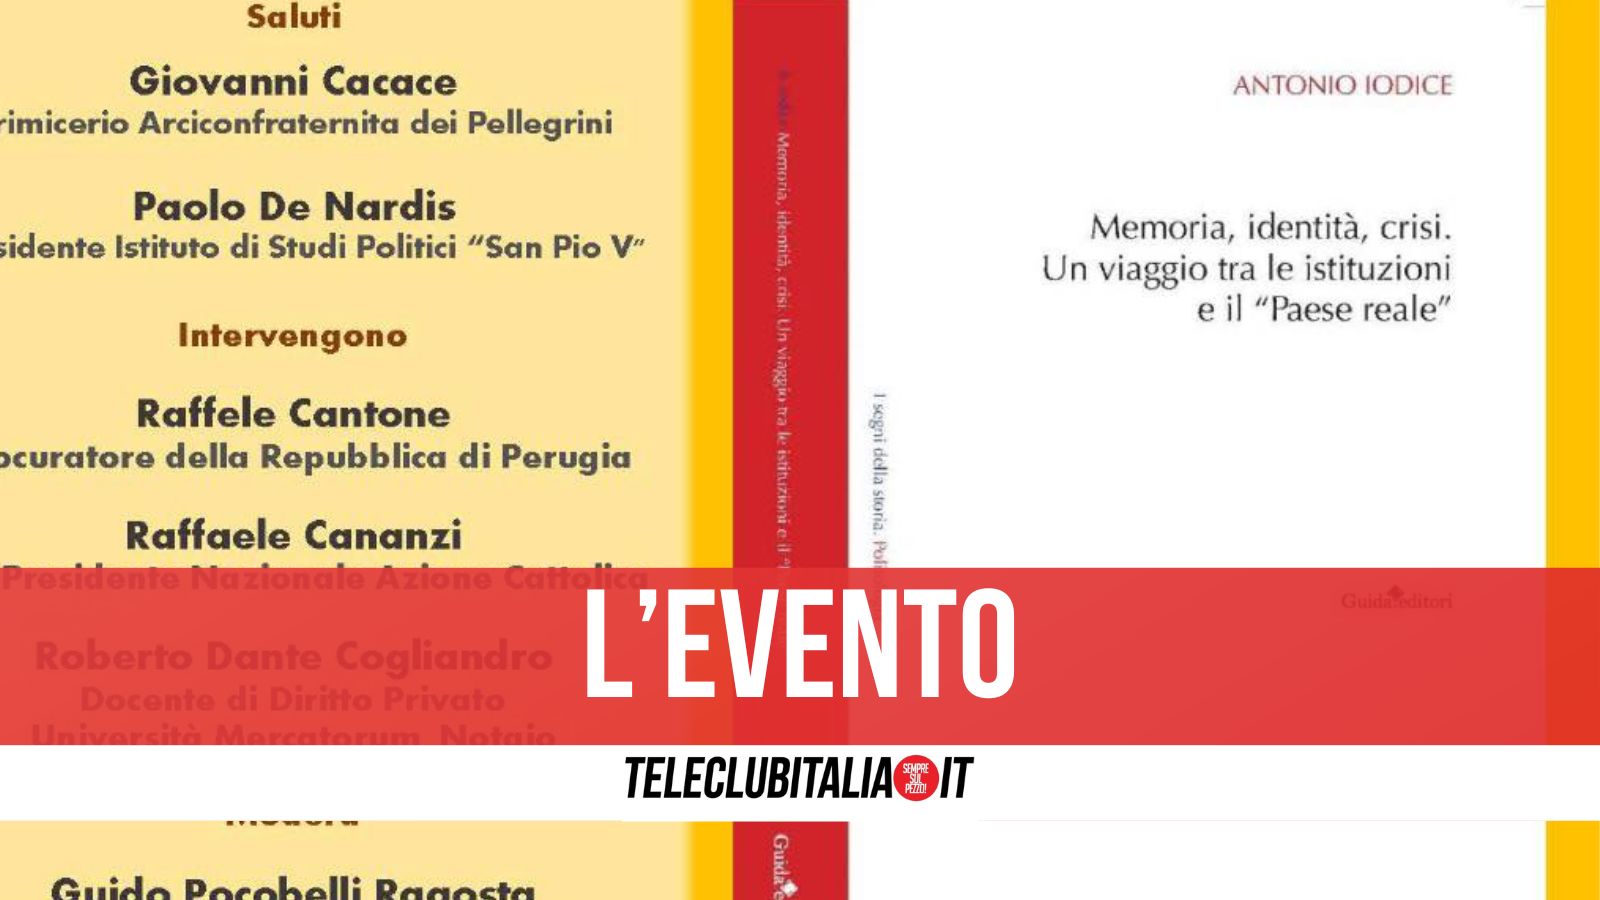 Napoli, venerdì 10 maggio la presentazione del libro “Memoria, identità e crisi” di Antonio Iodice all’Arciconfraternita dei Pellegrini